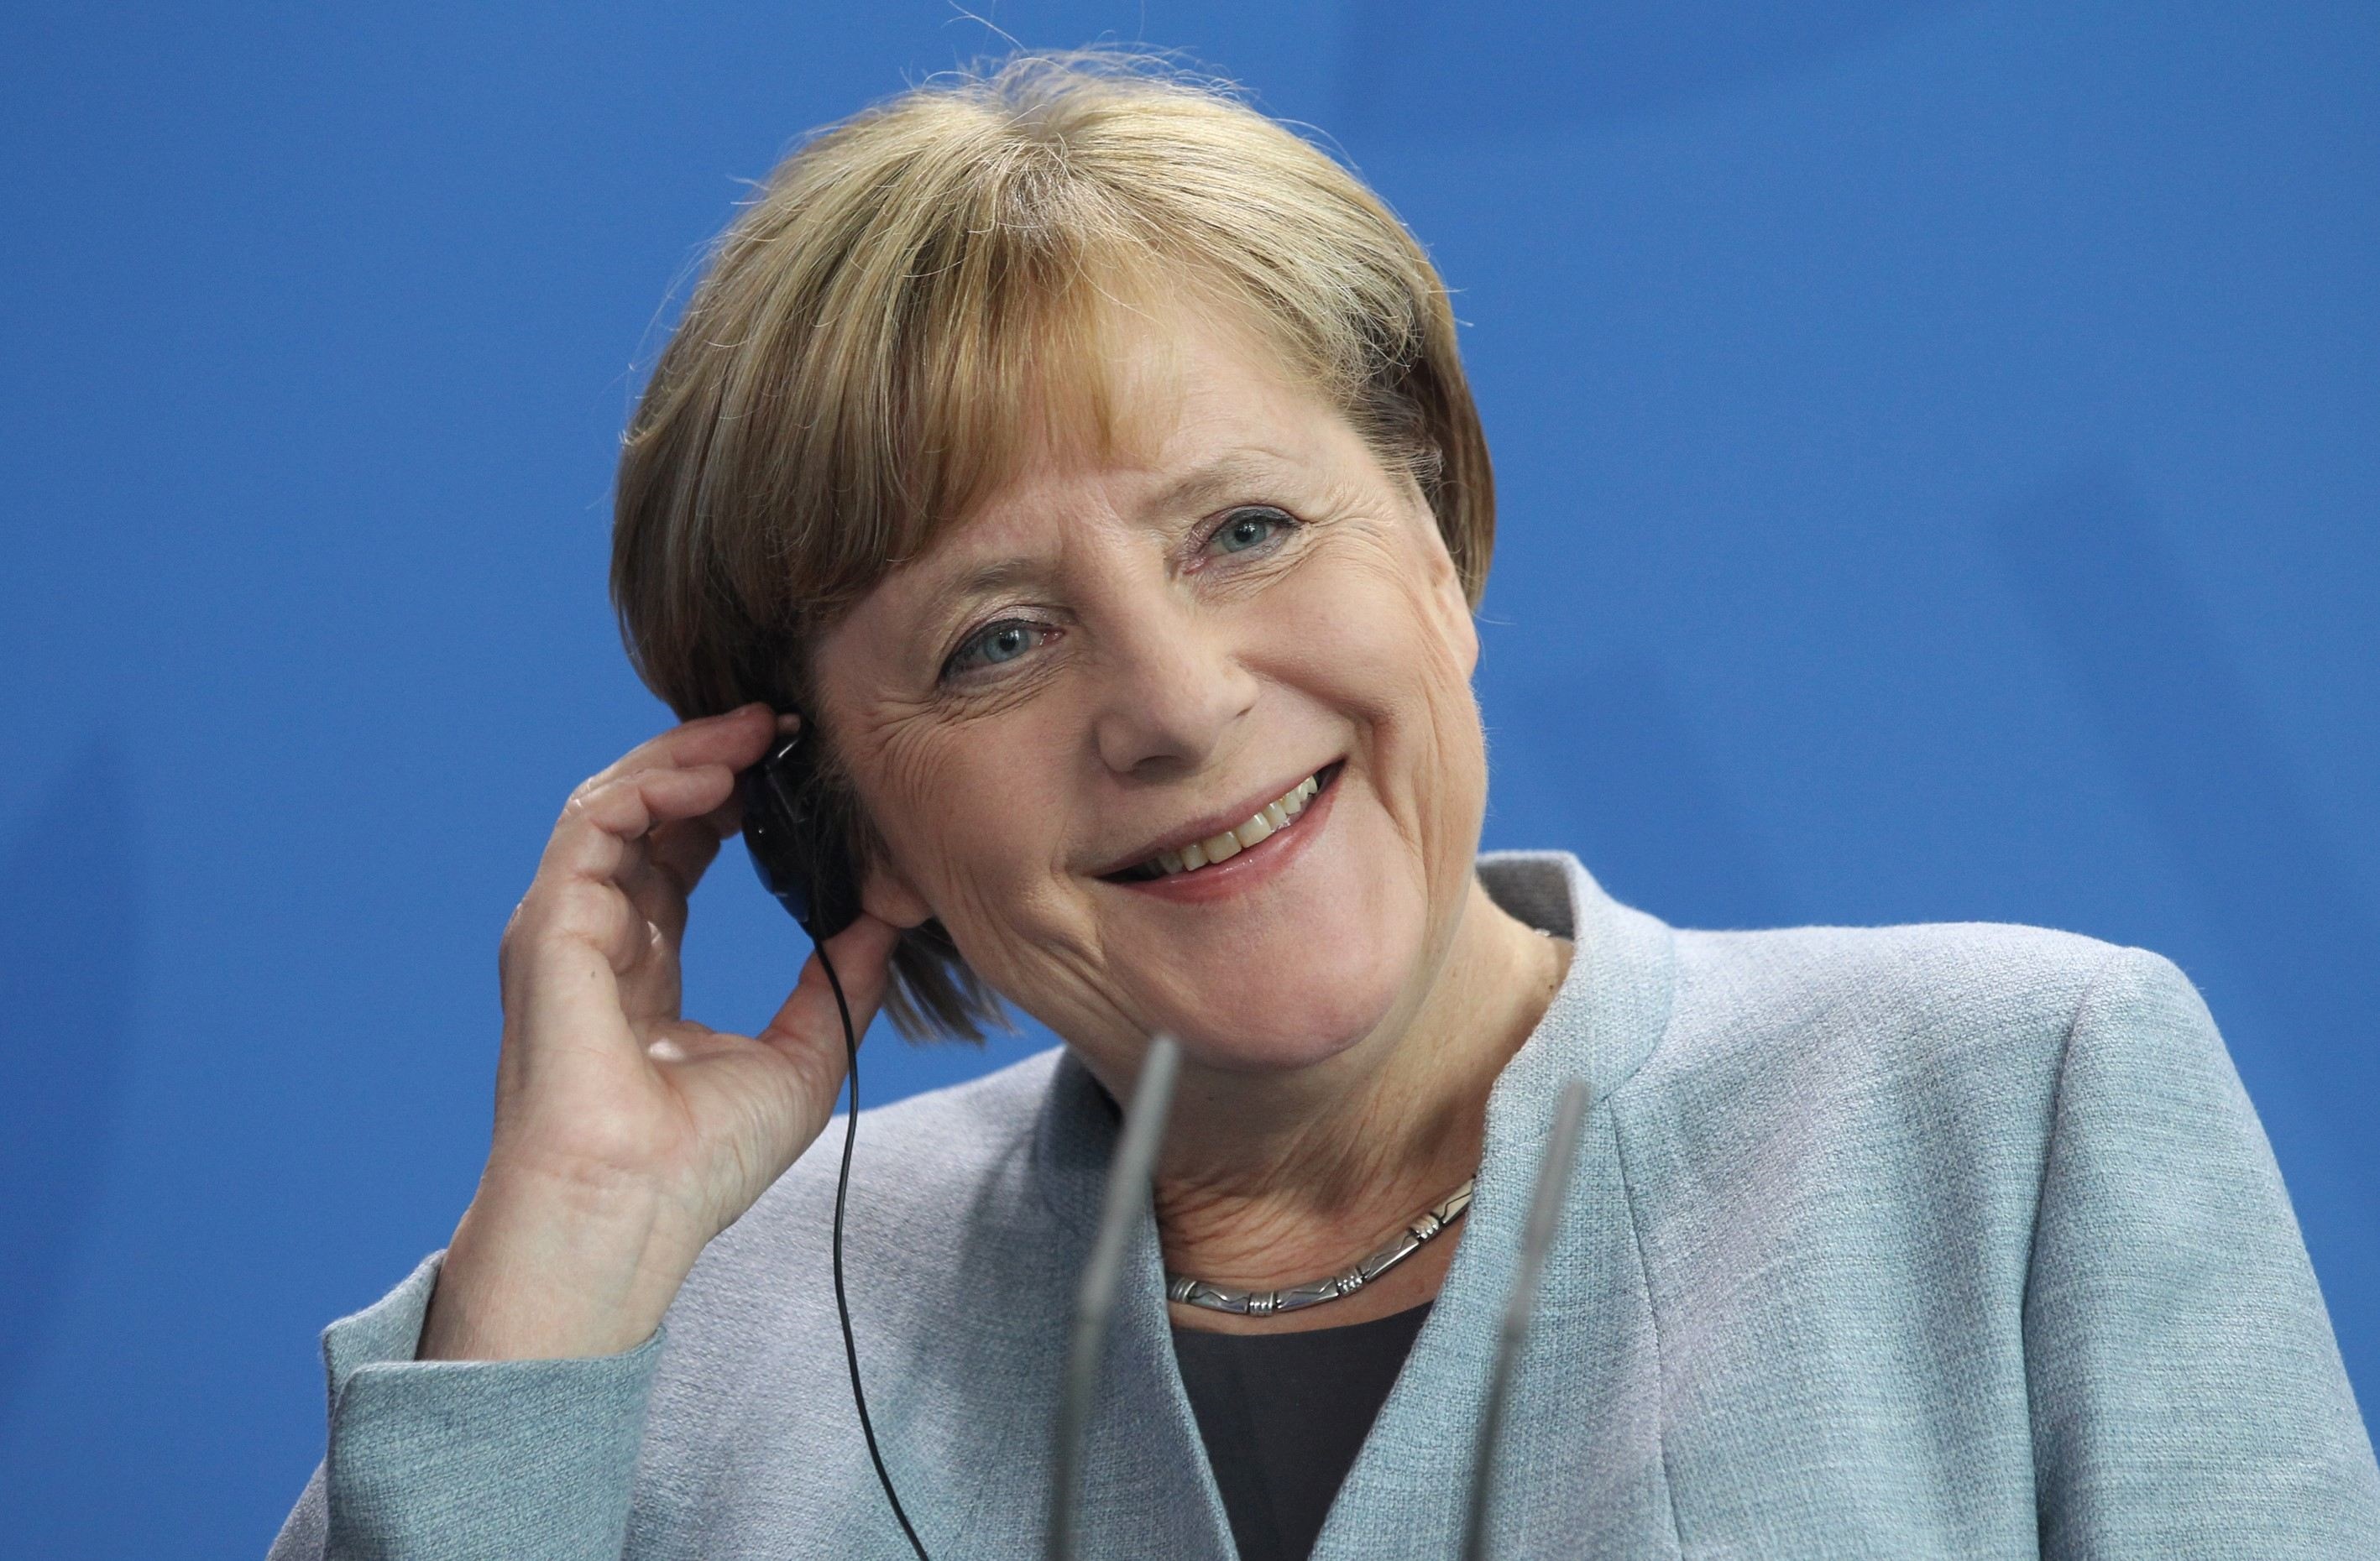 Eşecul lui Merkel de a forma un nou guvern se răsfrânge asupra euro. Pe piaţa din România însă, problemele germanilor sunt umbrite de revoluţia fiscală, iar leul continuă să se deprecieze